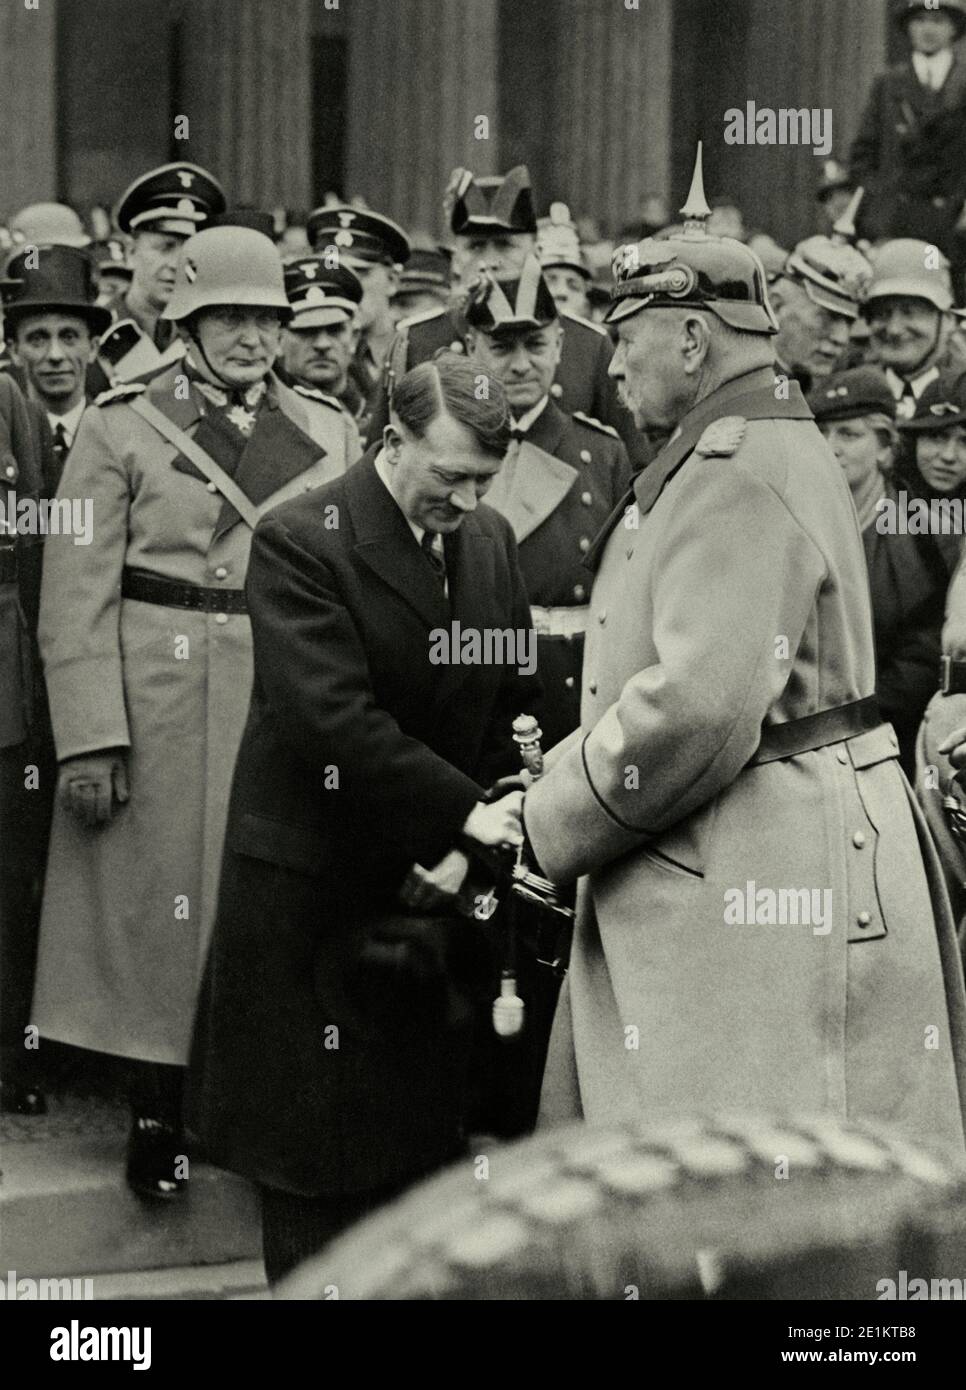 Deutschen NSDAP-Führer Adolf Hitler (1889 - 1945) entspricht der Deutschen Präsident Paul von Hindenburg nach Hitlers Ernennung zum Kanzler, 1933. Hinter Stockfoto